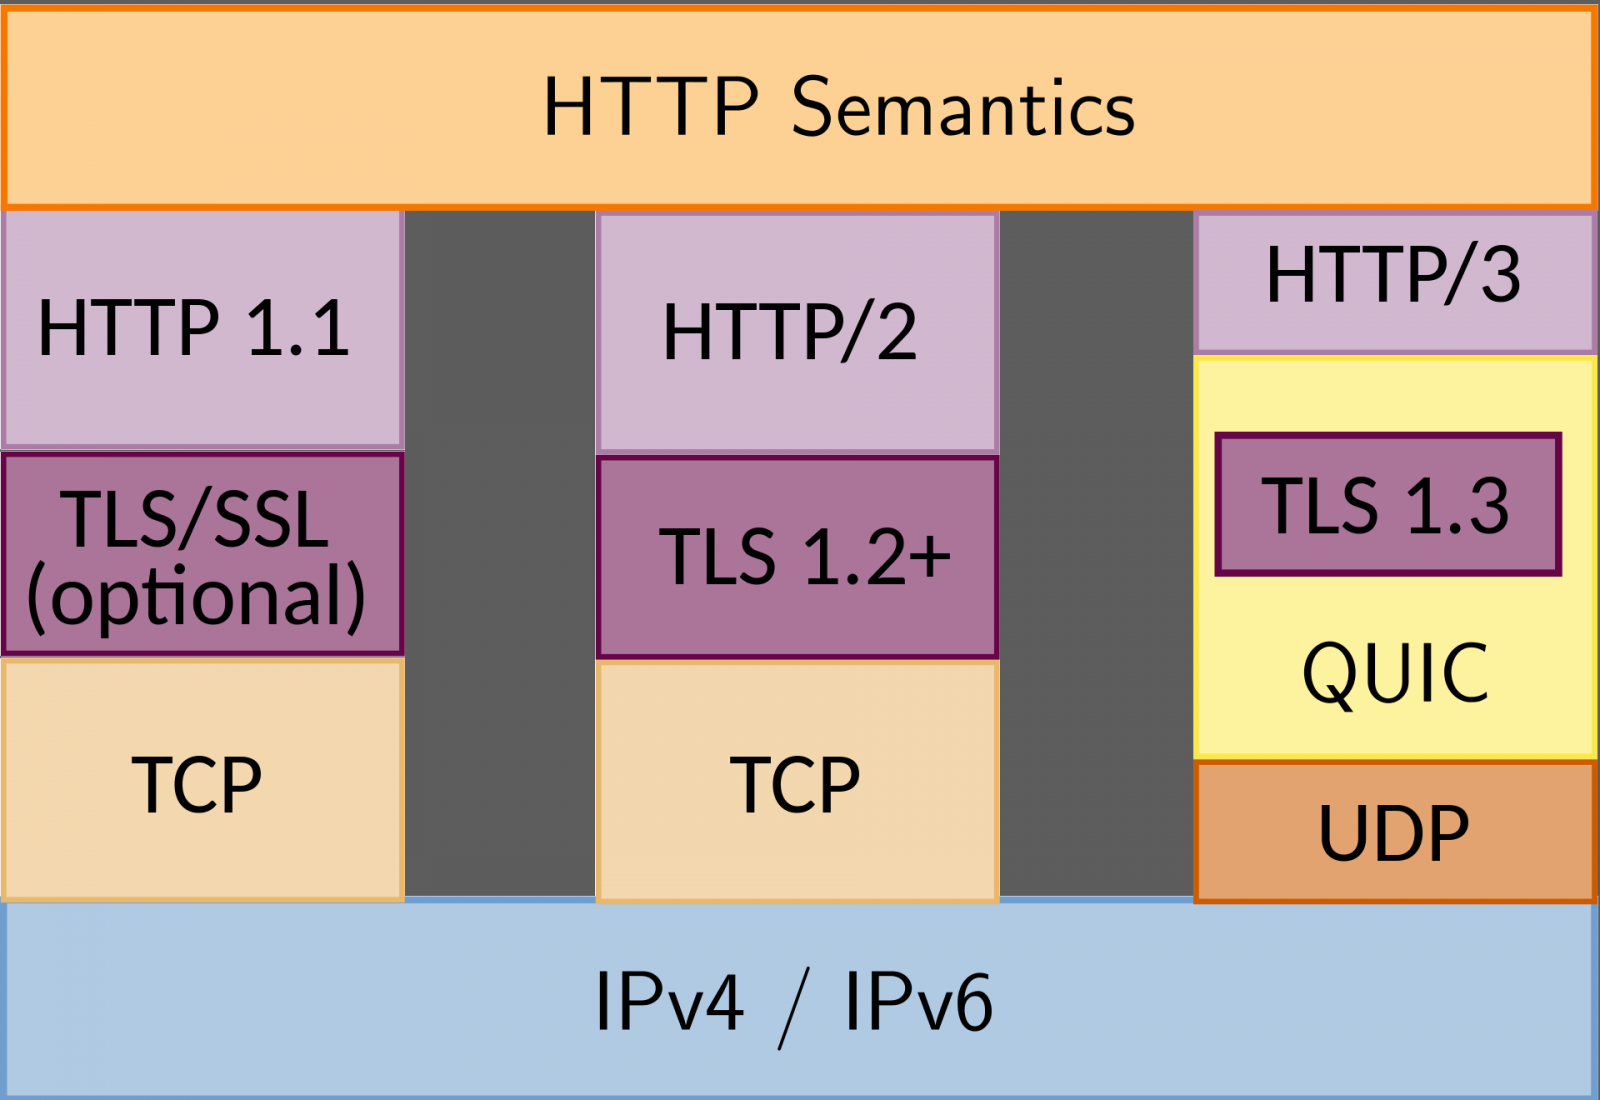 Protocol stack comparison